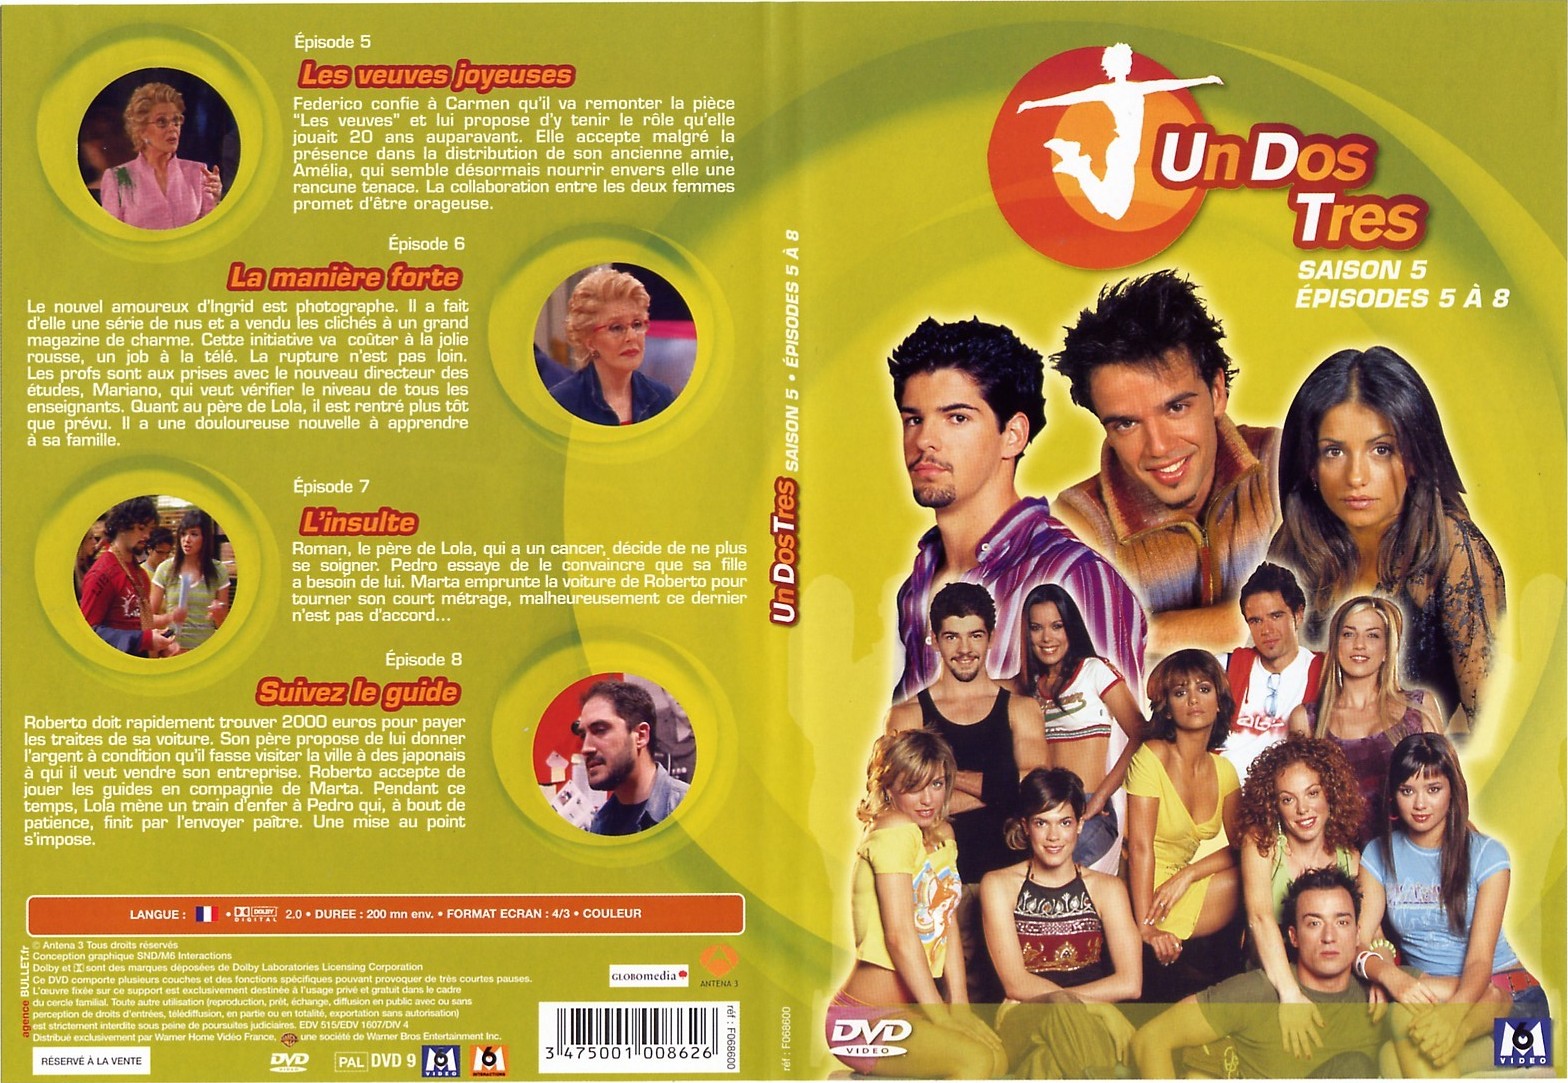 Jaquette DVD Un Dos Tres saison 5 Episodes 5  8